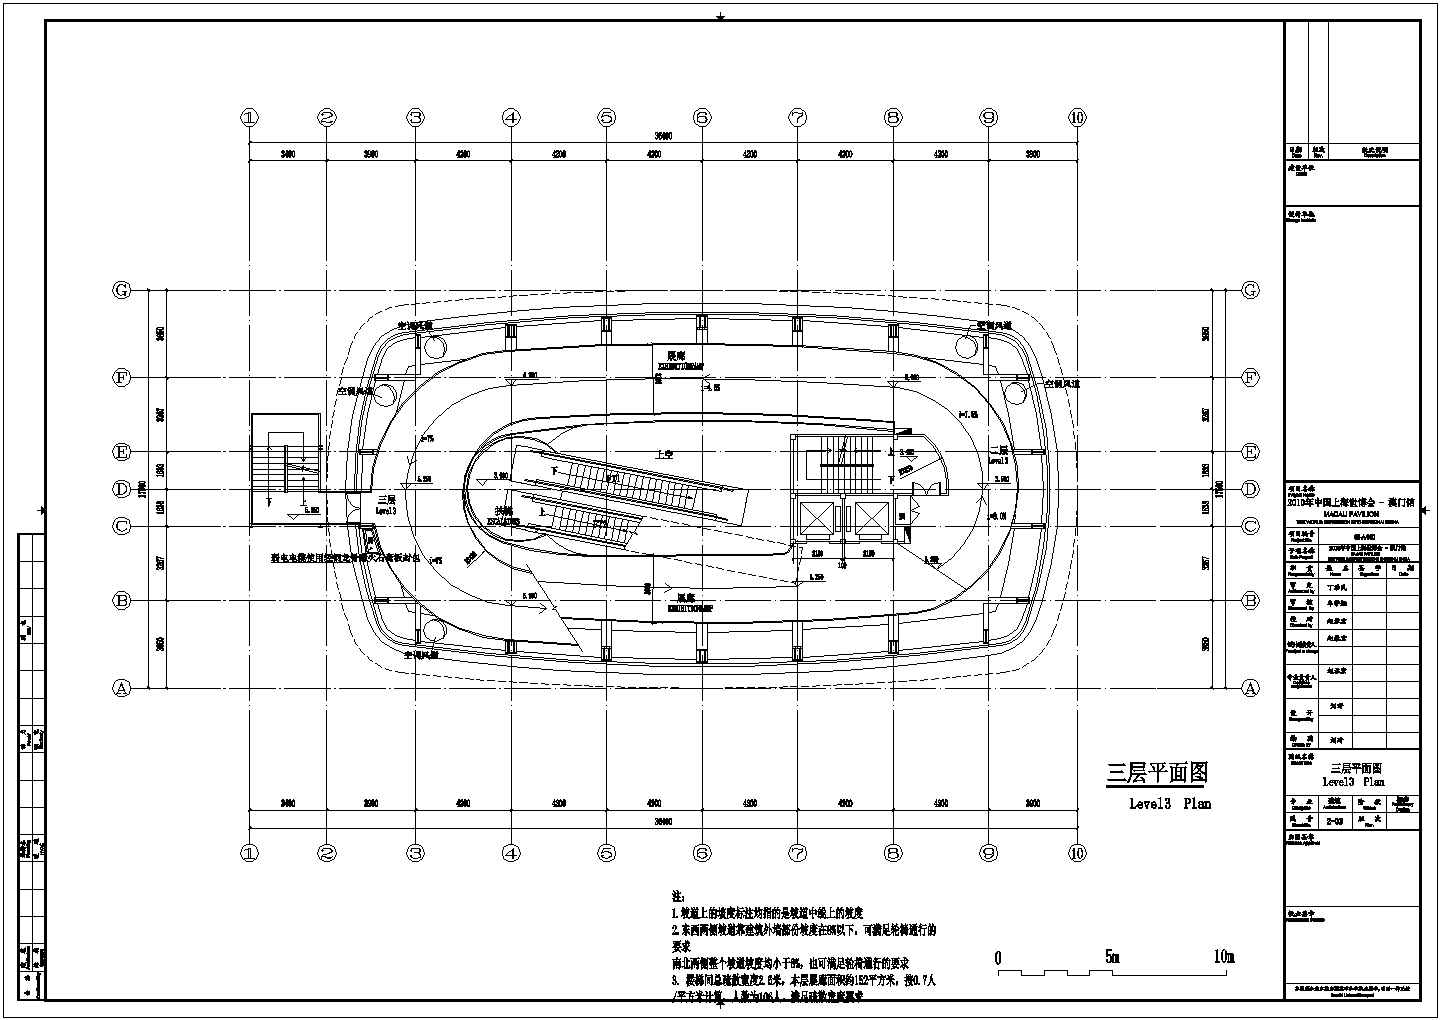 长36.4米 宽17.5米 8层展览展馆初步CAD建筑设计方案平立剖面图